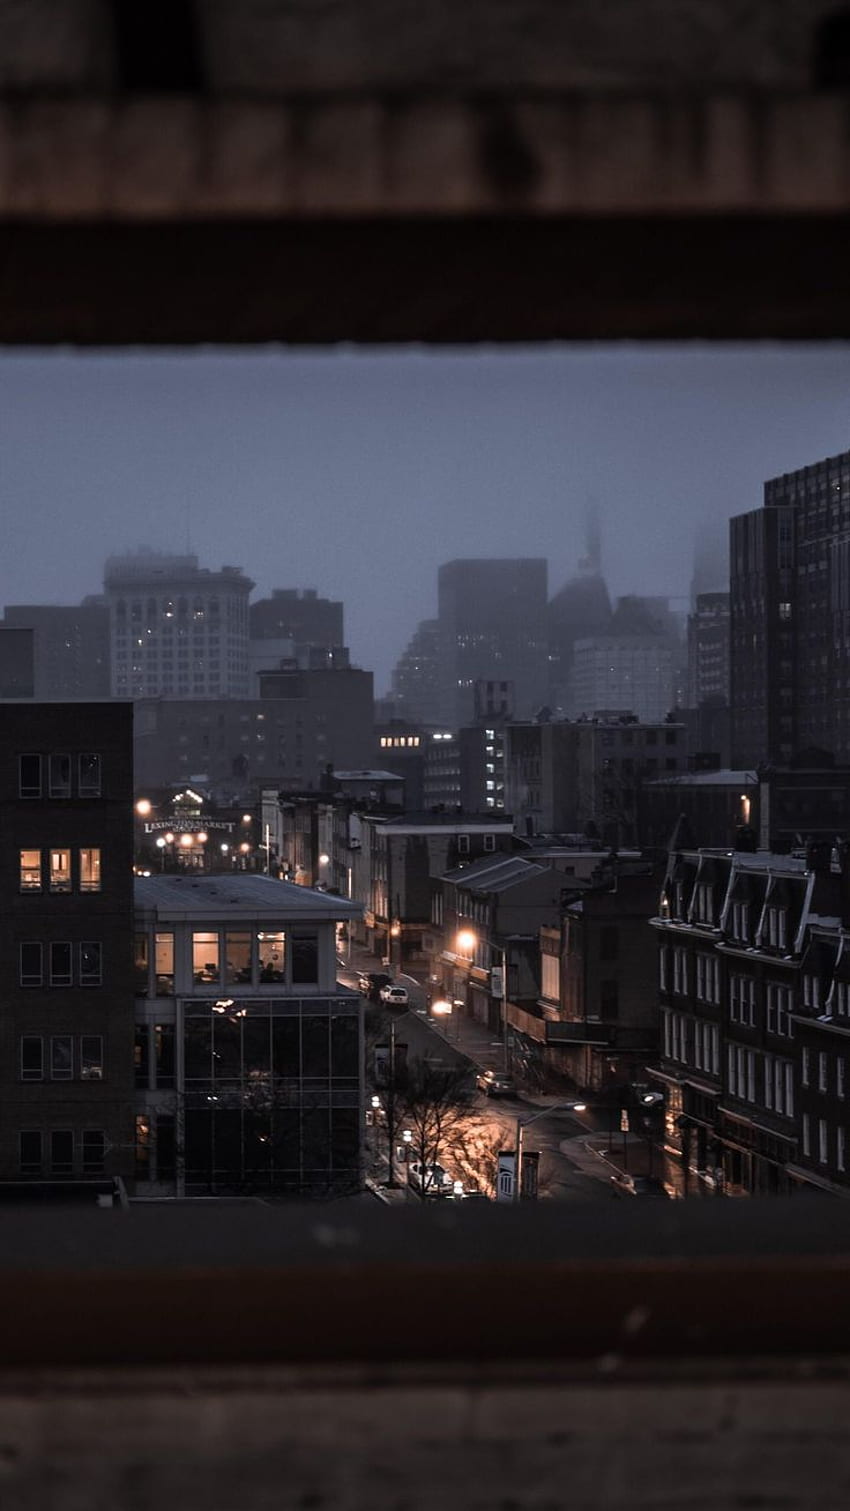 Deszczowy Mglisty Wieczór W Baltimore MD. Albo Gotham Idk [OC] []. Estetyka miasta, deszczowe miasto, mglisty Tapeta na telefon HD